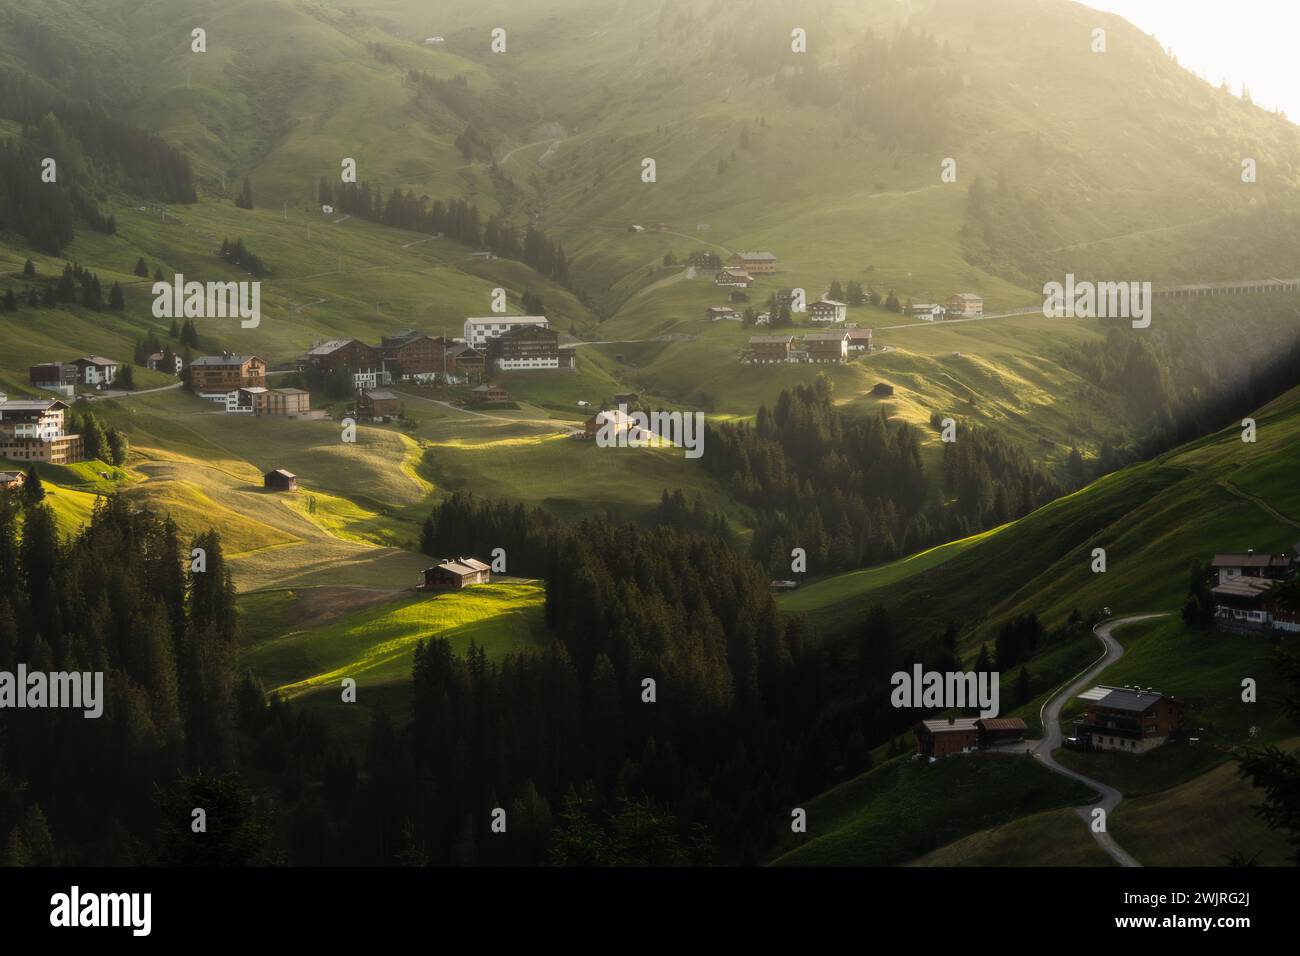 Ein malerischer Blick auf das idyllische Dorf inmitten grüner Berge in Warth, Österreich. Stockfoto